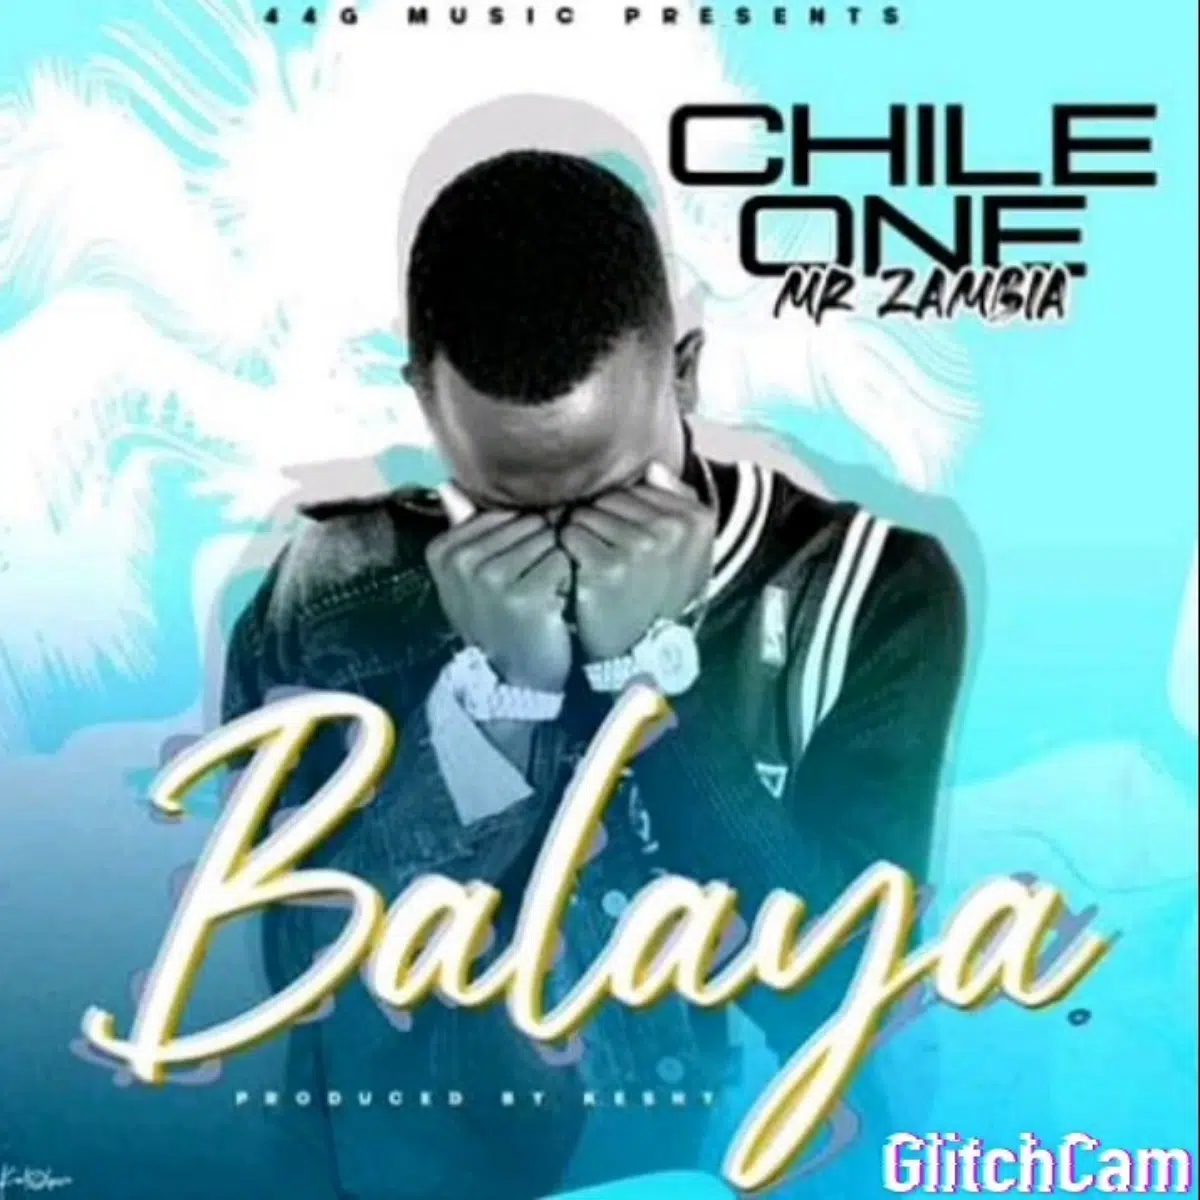 DOWNLOAD: Chile One Mr Zambia – “Balaya” Mp3